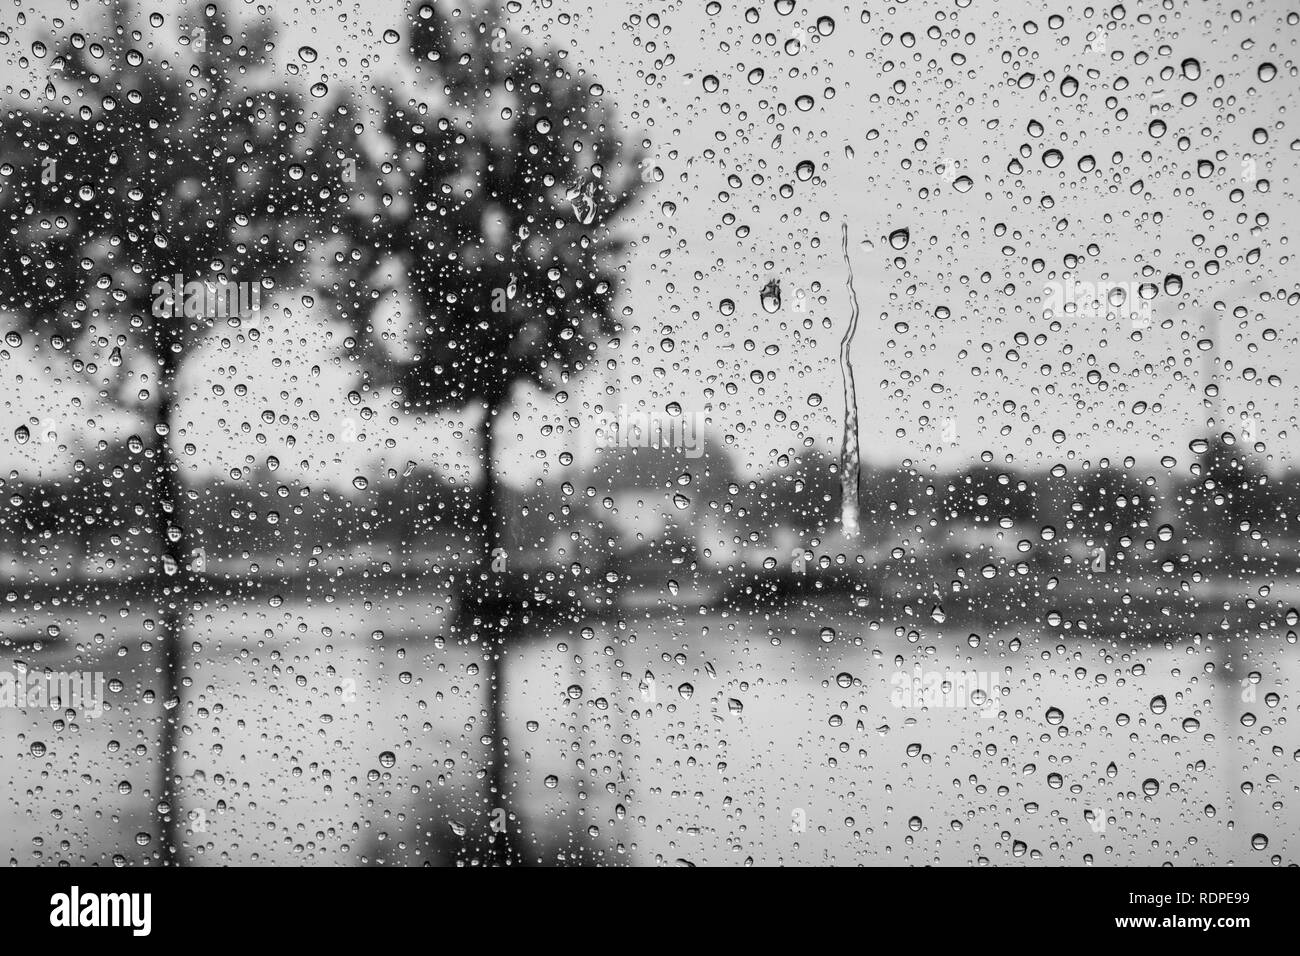 Gouttes de pluie sur le pare-brise ; arbres se reflétant dans la chaussée mouillée ; noir et blanc Banque D'Images